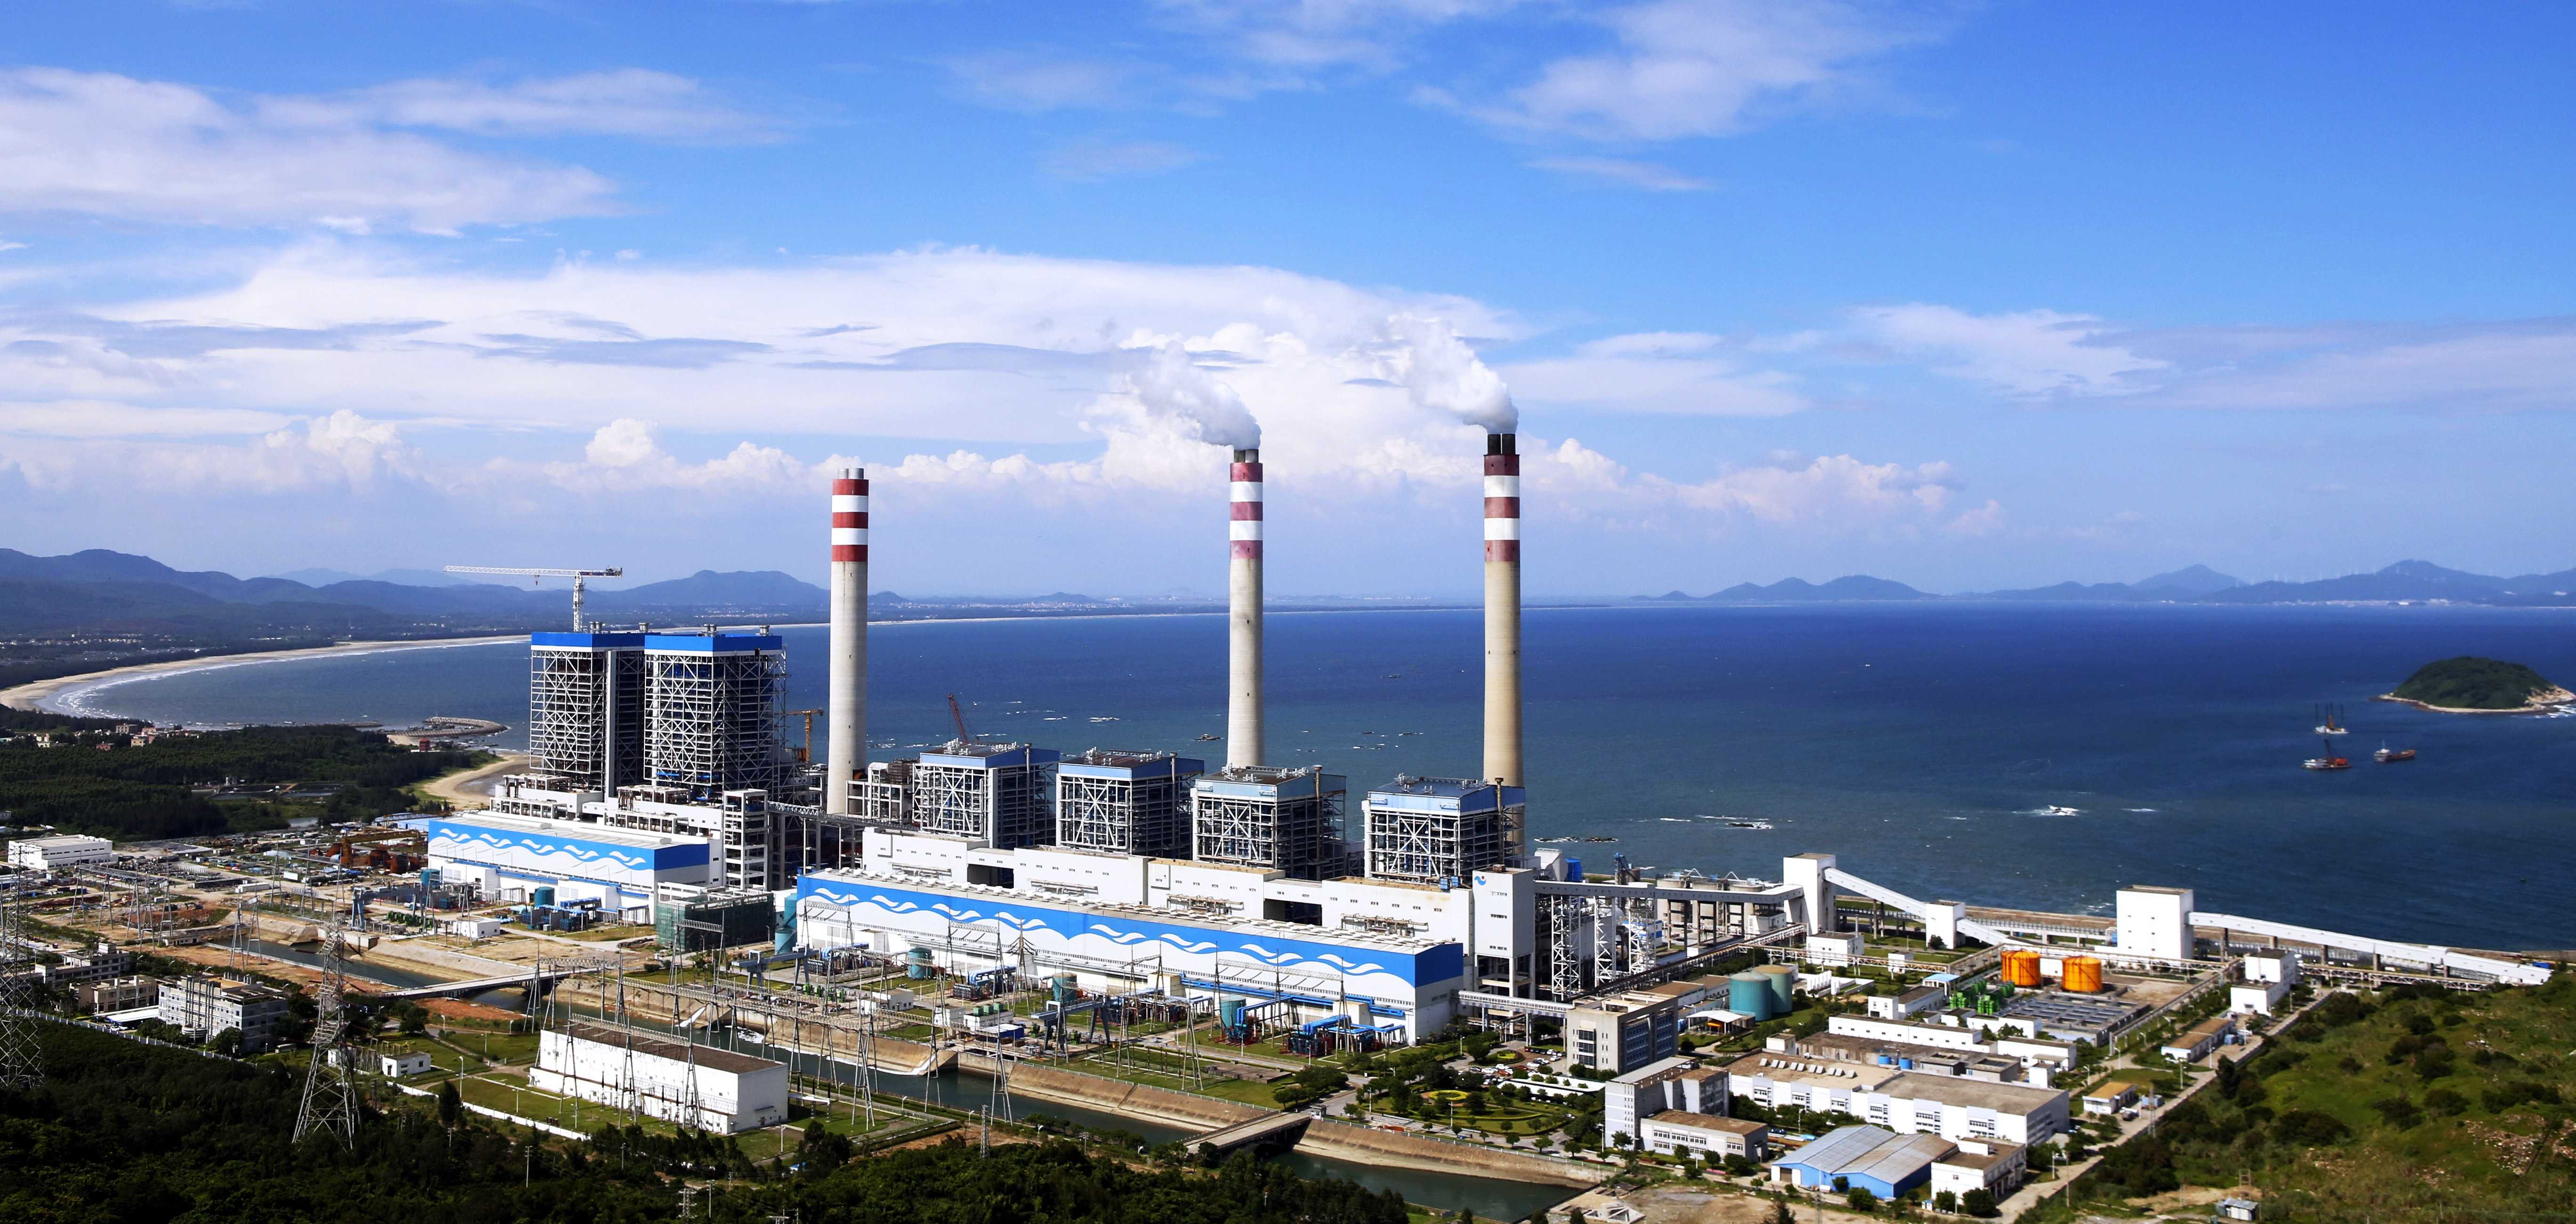 上海電氣電站環保工程有限公司 